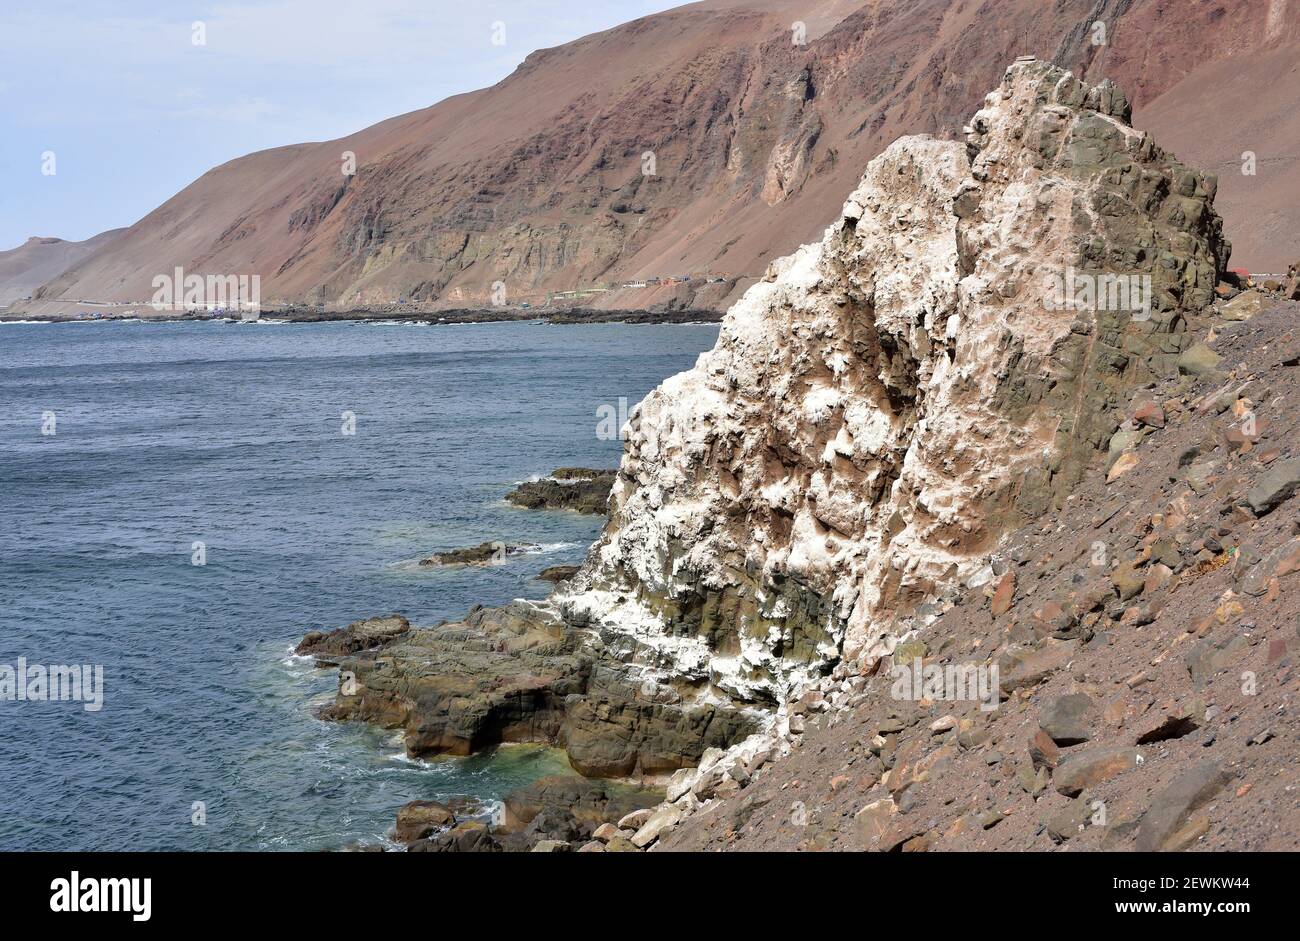 Guano Depot (weißer Streifen). Dieser Guano (Dünger) ist eine angesammelte Ausscheidung von Seevögeln. Dieses Foto wurde an der Küste von Arica, Norte Grande de, aufgenommen Stockfoto